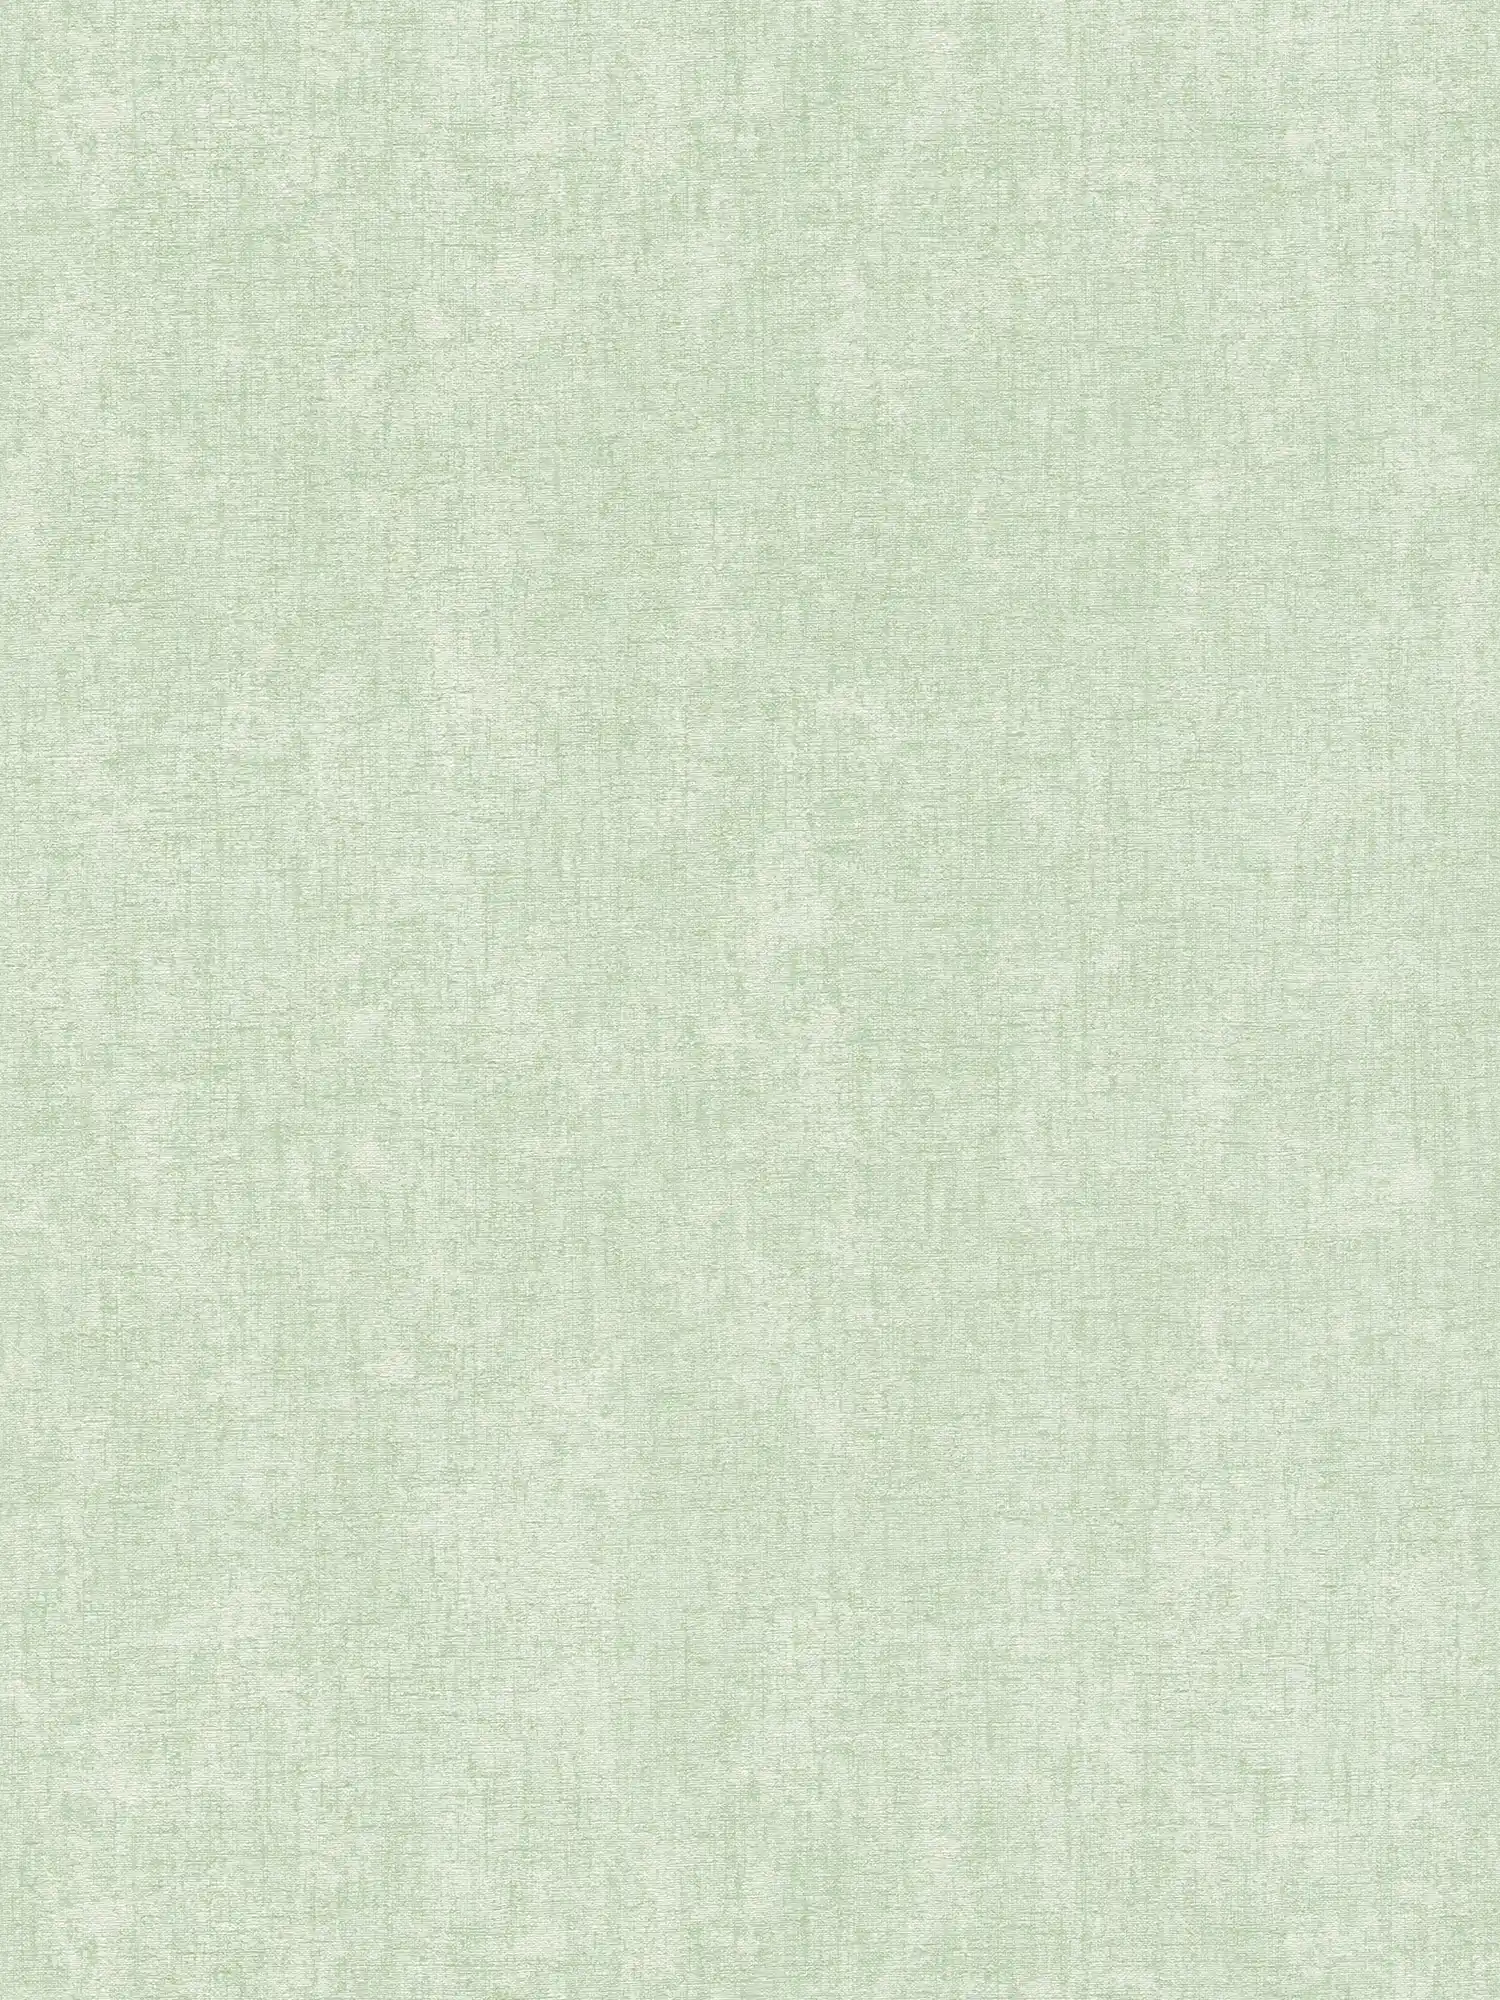 Mintgroen behang effen met textuurdetails - Groen
